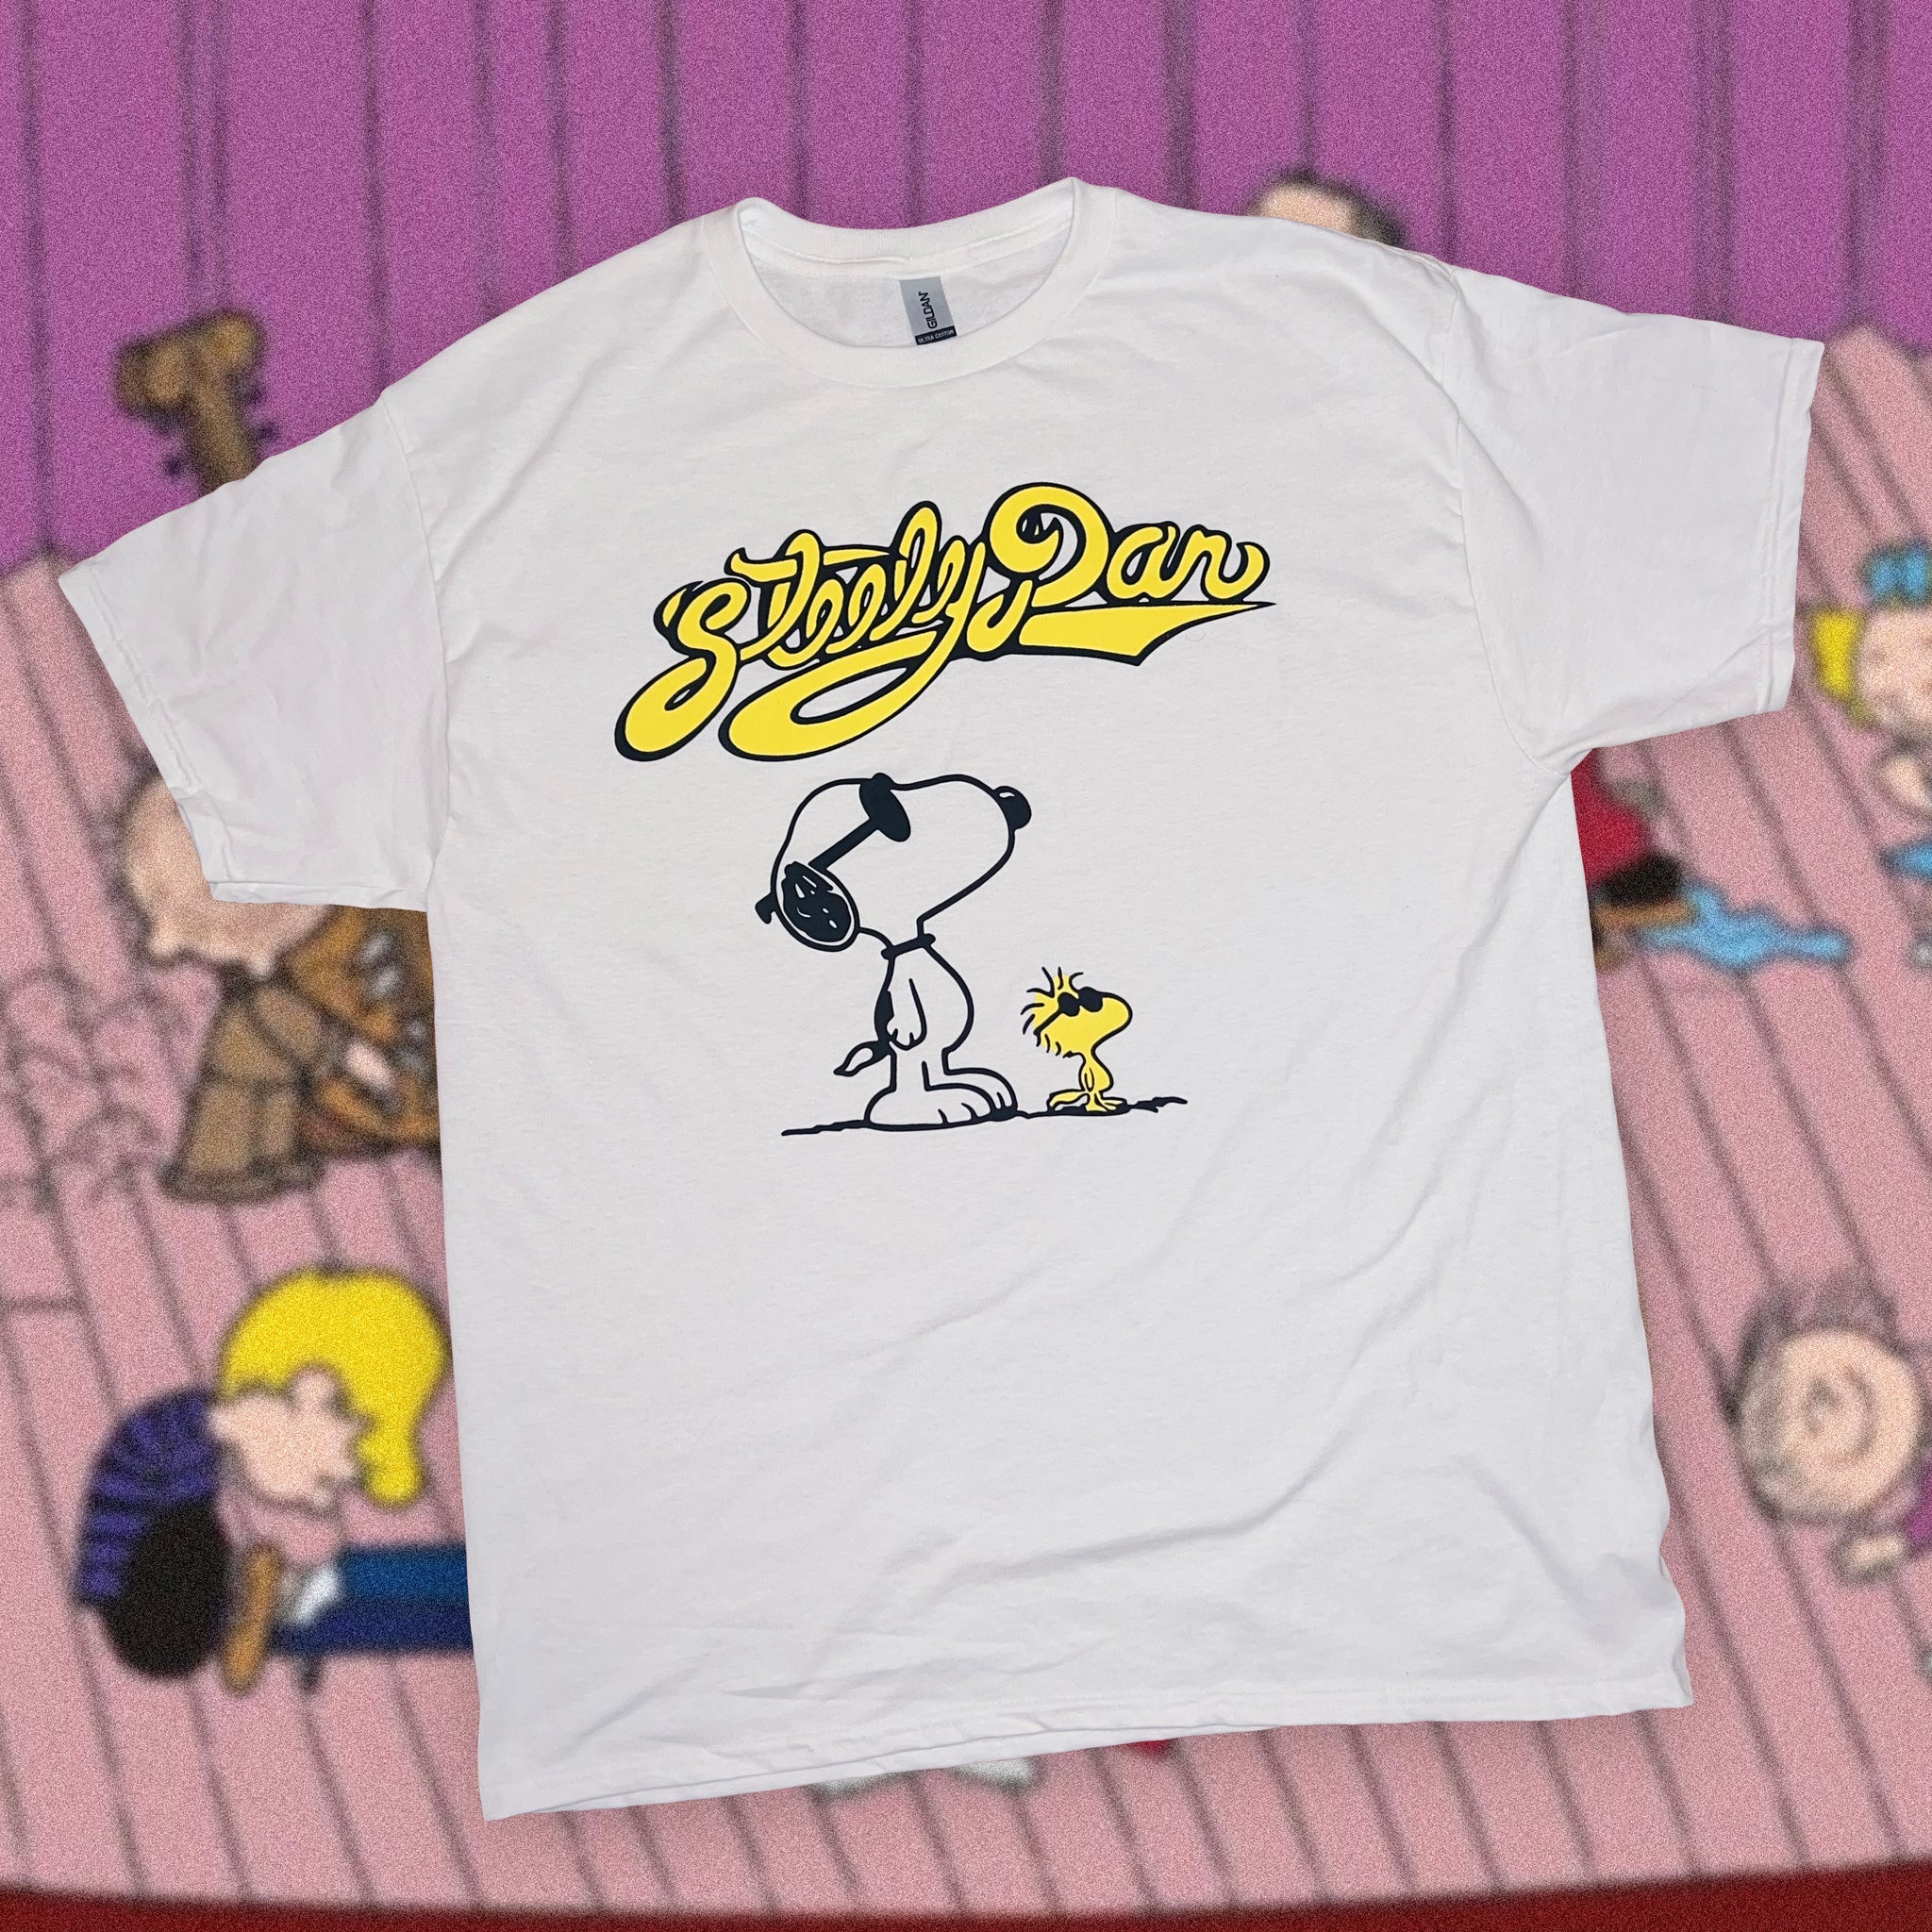 Snoopy Dan